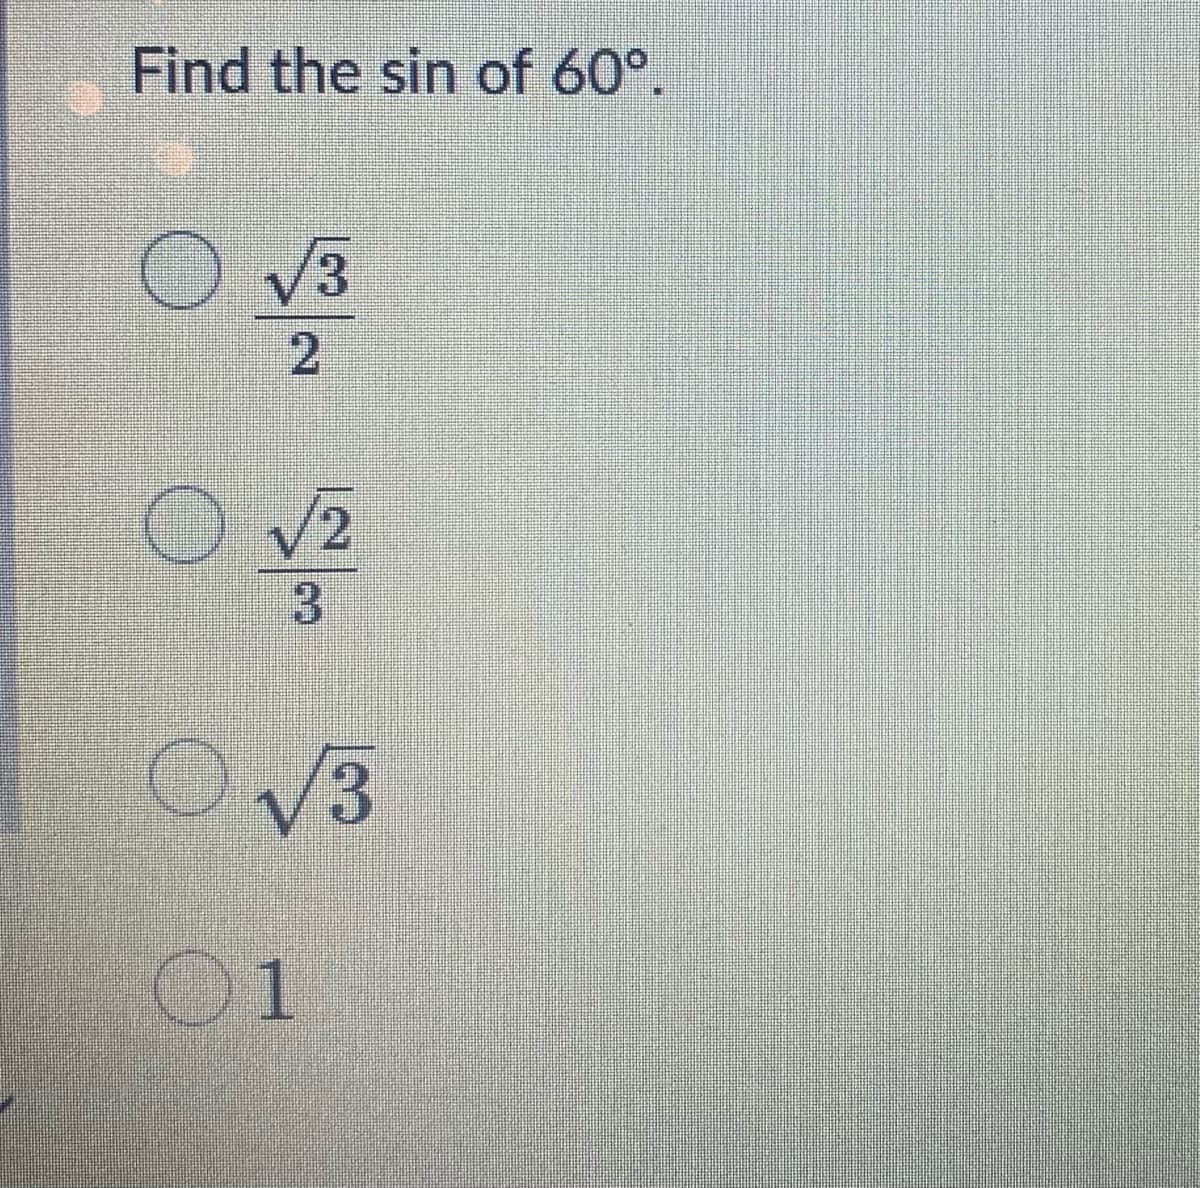 Find the sin of 60°.
3.
V2
V3
01
